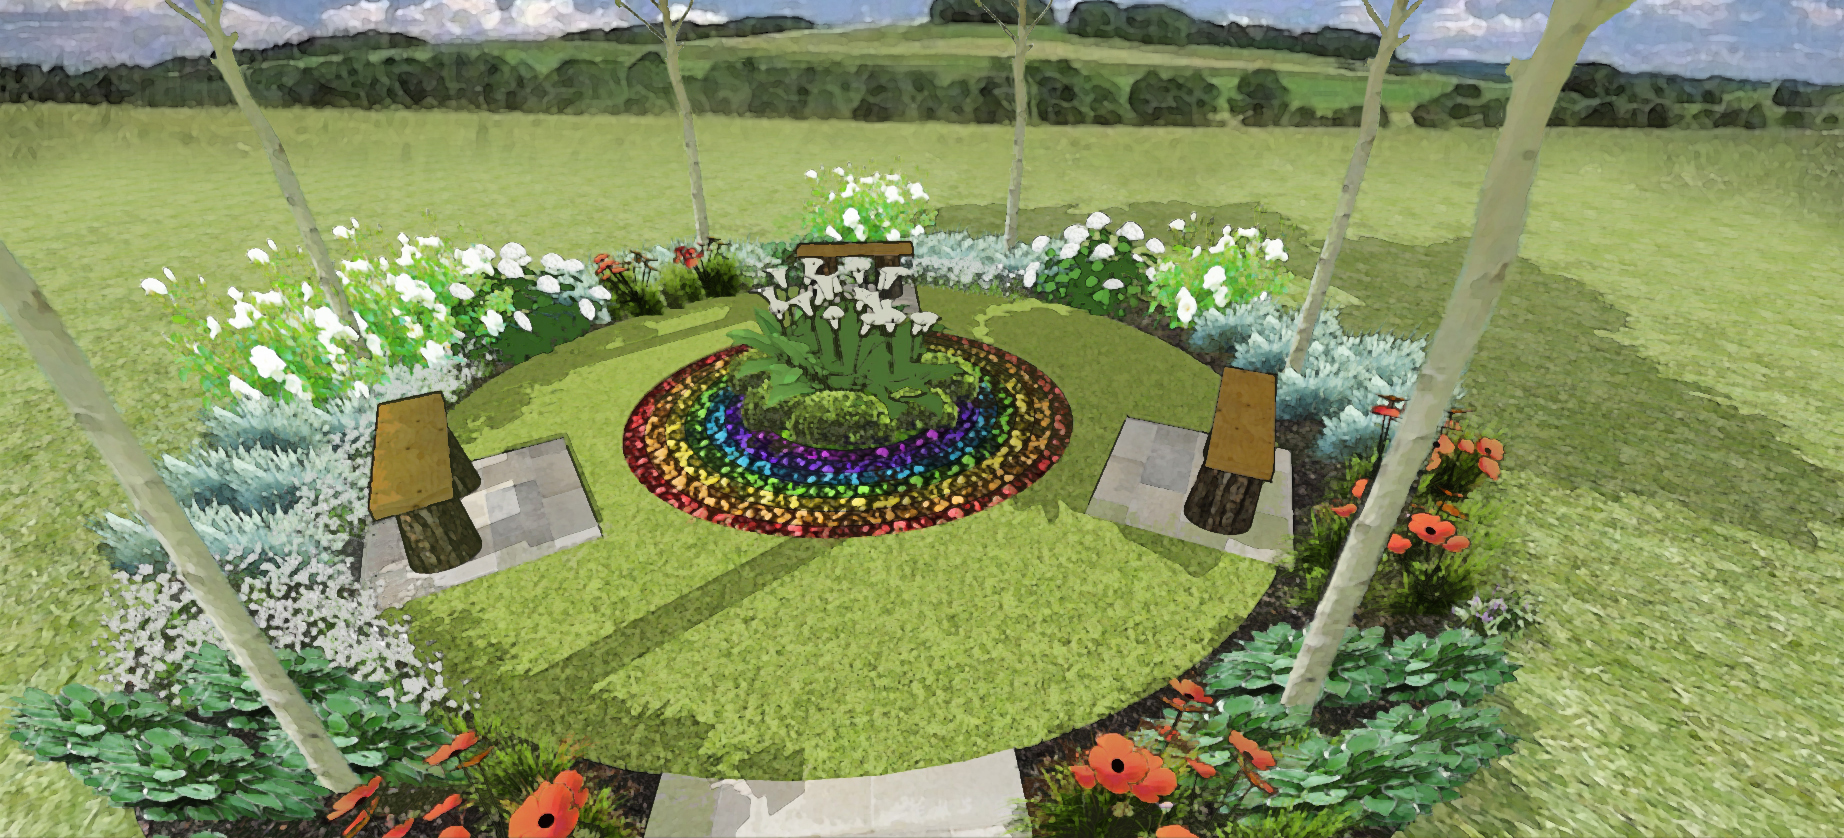 2021-03/1616497038_covid-memorial-garden-sketch-entering